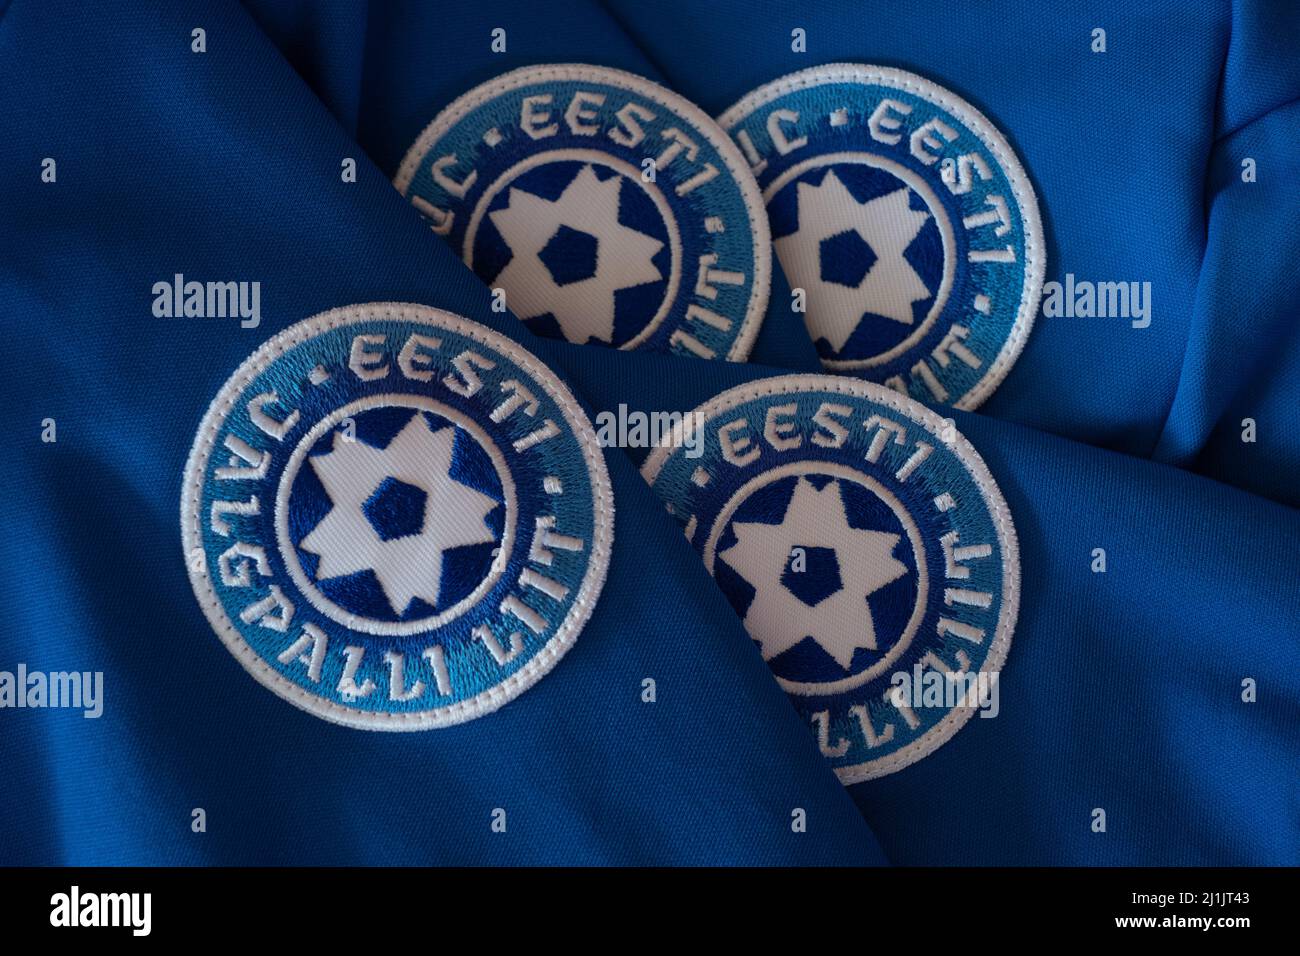 Eesti Jalgpalli Liit (Asociación de Fútbol de Estonia) emblema en una camiseta azul de la selección nacional. Logotipo de la federación de Fútbol de Estonia. Foto de stock